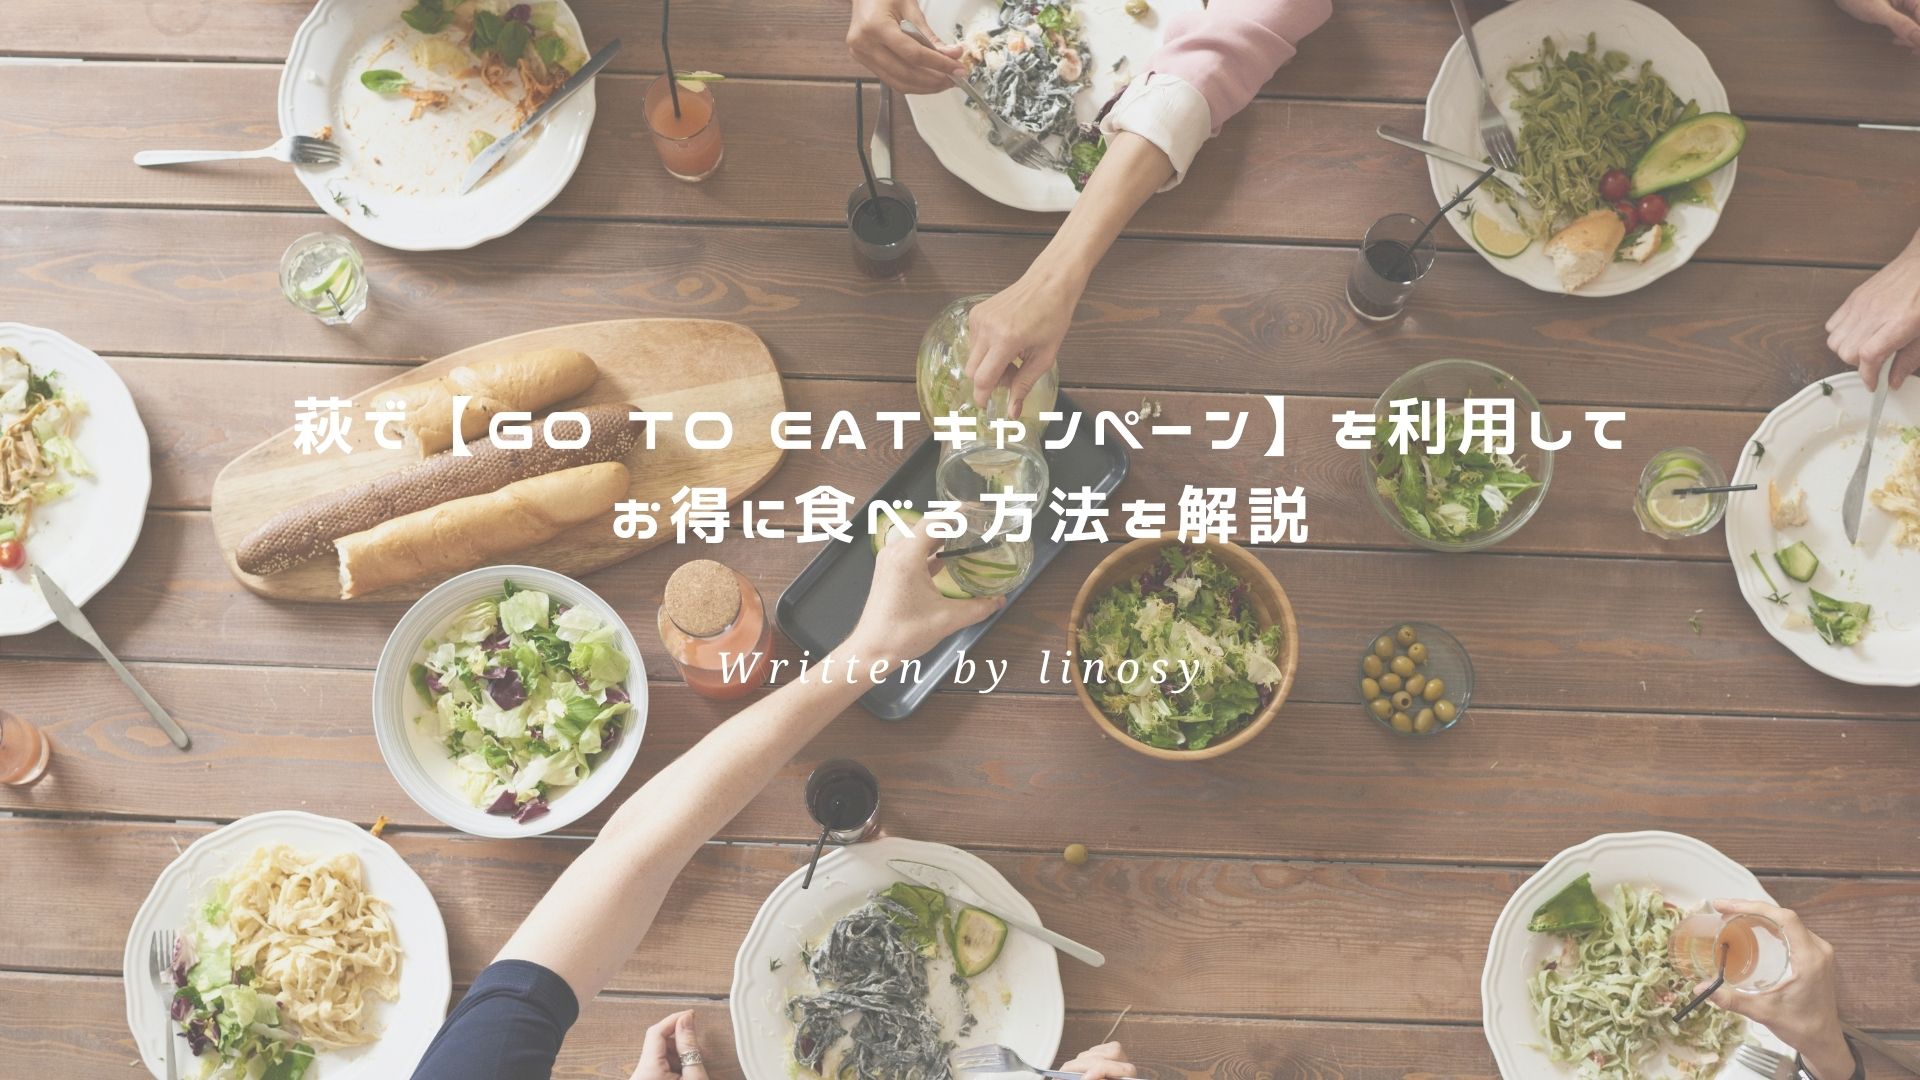 Go To Eatキャンペーン アイキャッチ